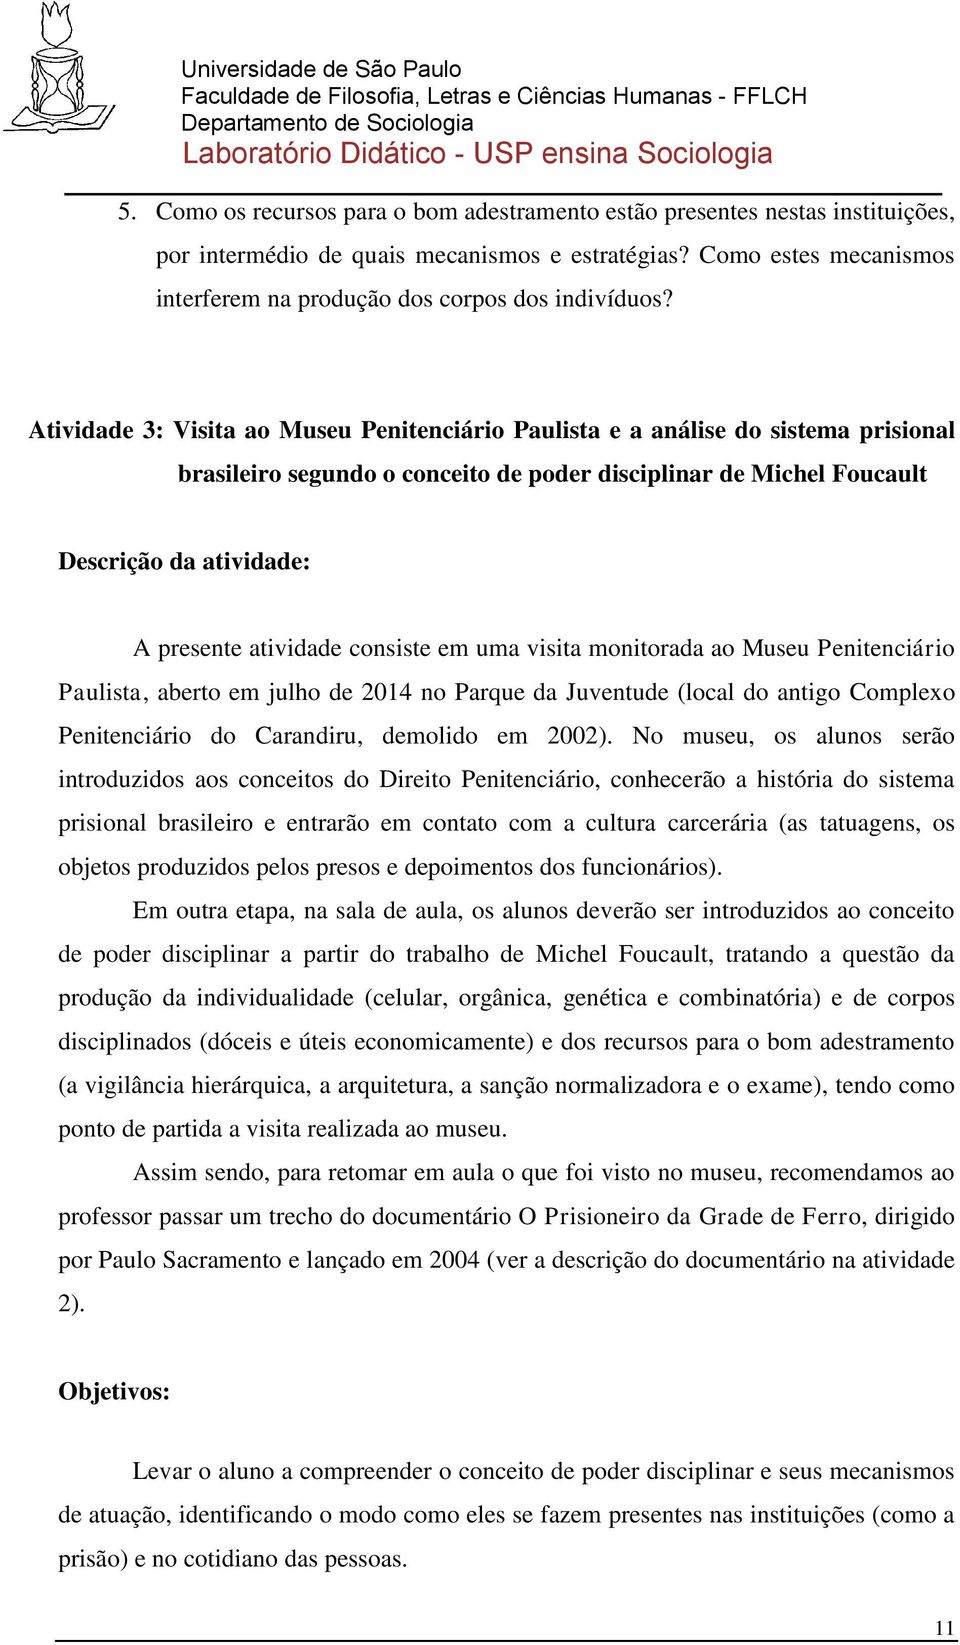 Atividade 3: Visita ao Museu Penitenciário Paulista e a análise do sistema prisional brasileiro segundo o conceito de poder disciplinar de Michel Foucault Descrição da atividade: A presente atividade